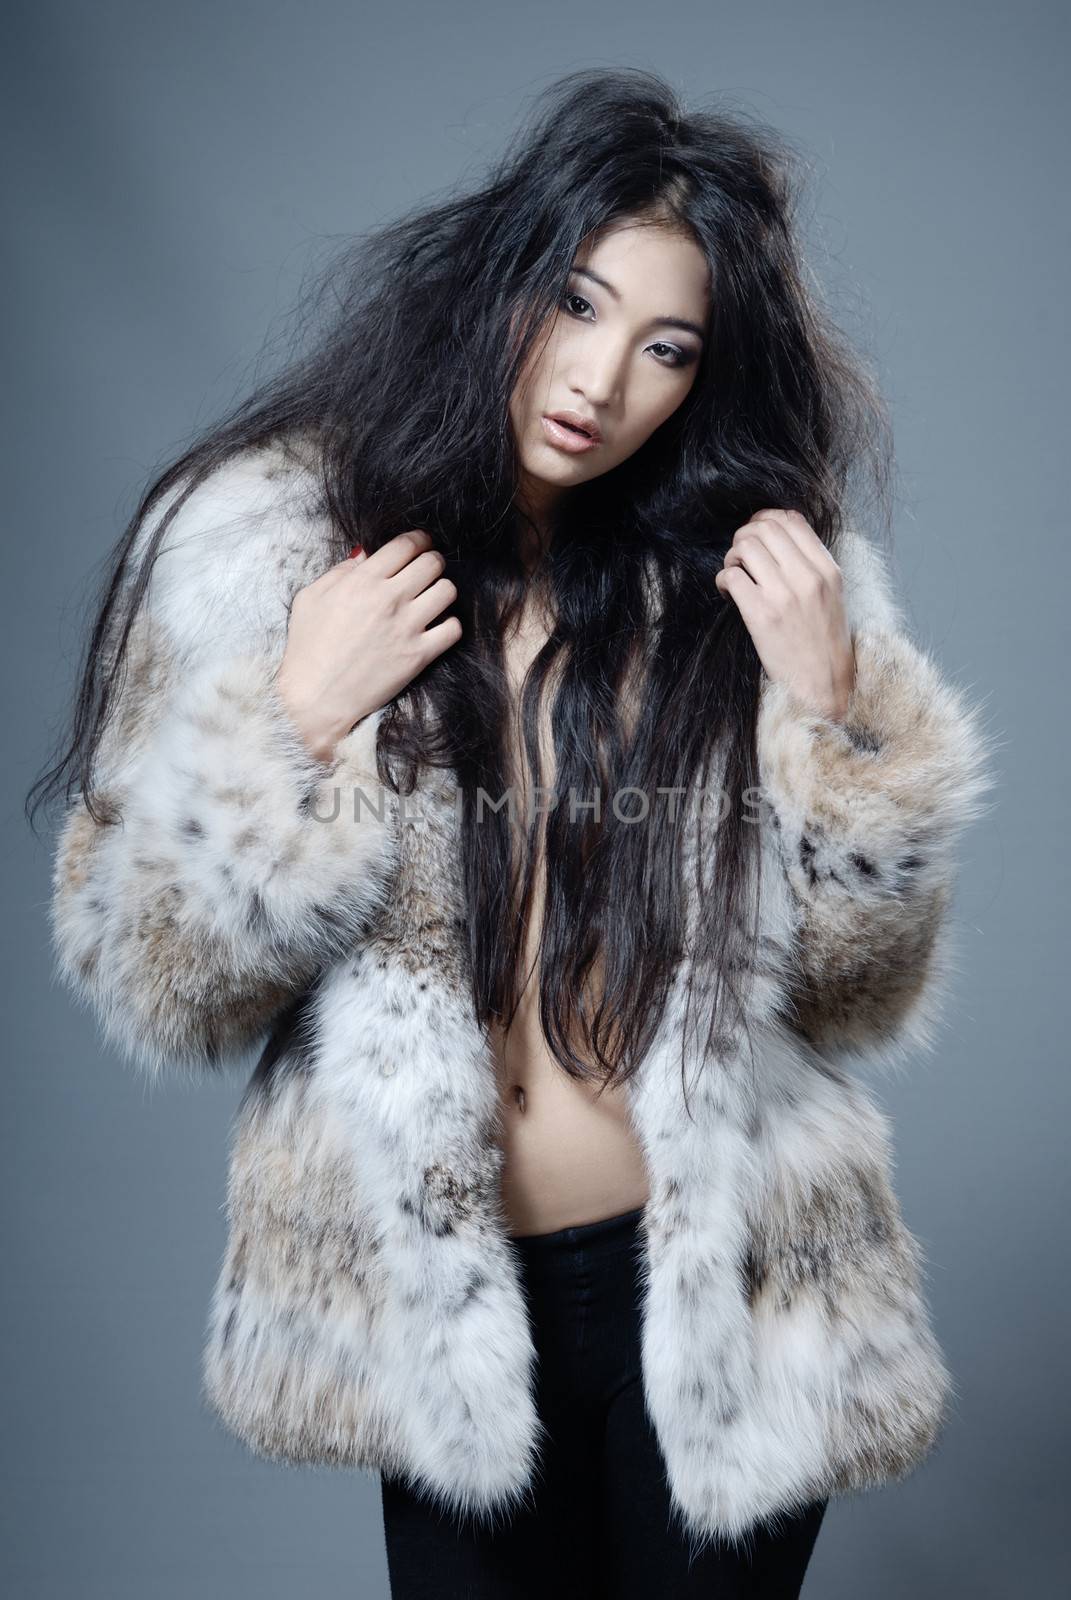 Asian beauty in fur coat by Novic